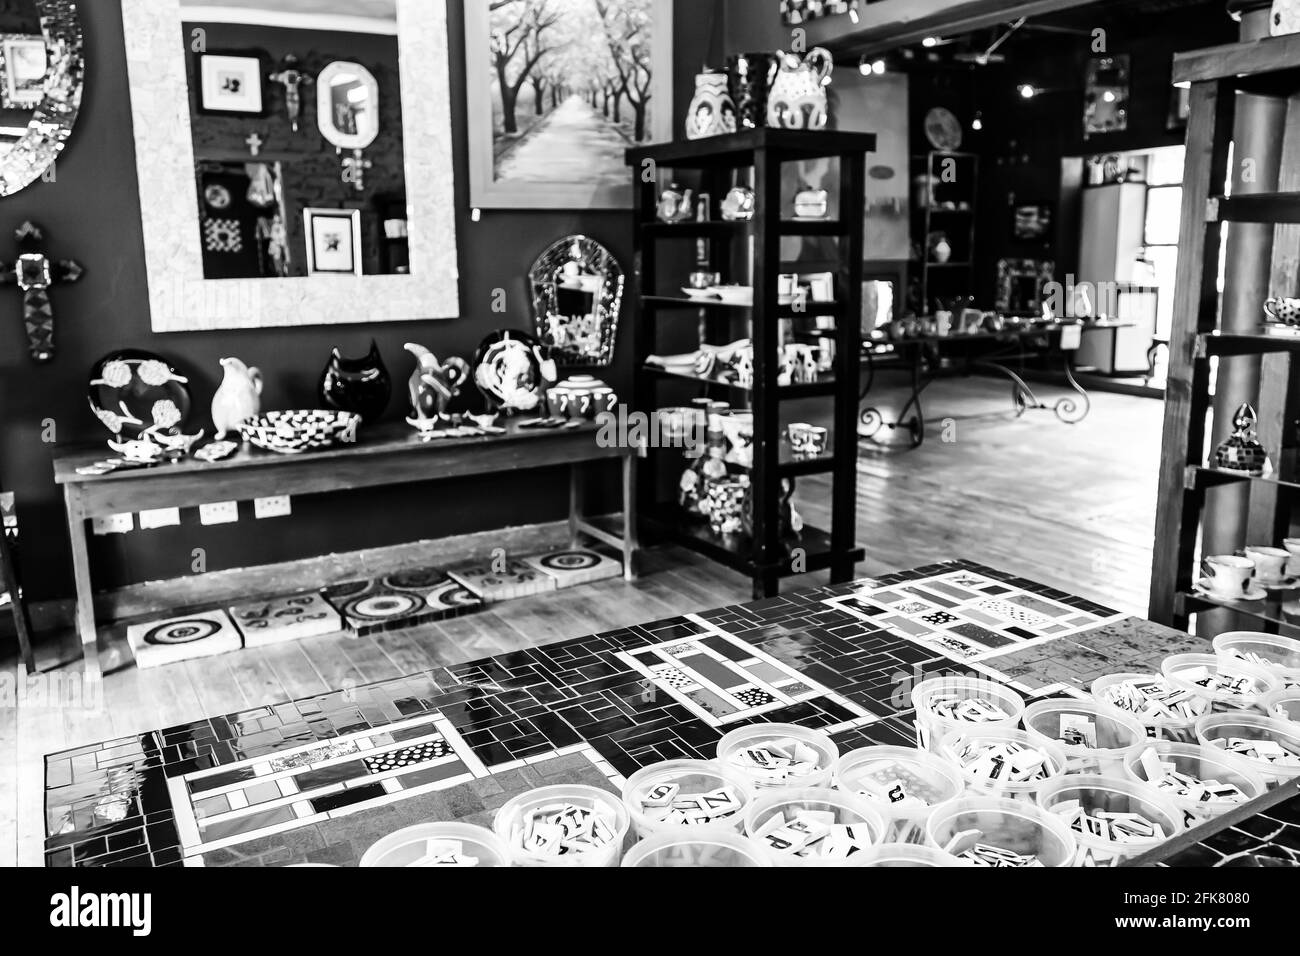 JOHANNESBU, AFRIQUE DU SUD - 13 mars 2021: Johannesburg, Afrique du Sud - 5 décembre 2012: Intérieur de la céramique et de la porcelaine magasin d'art et d'artisanat Banque D'Images